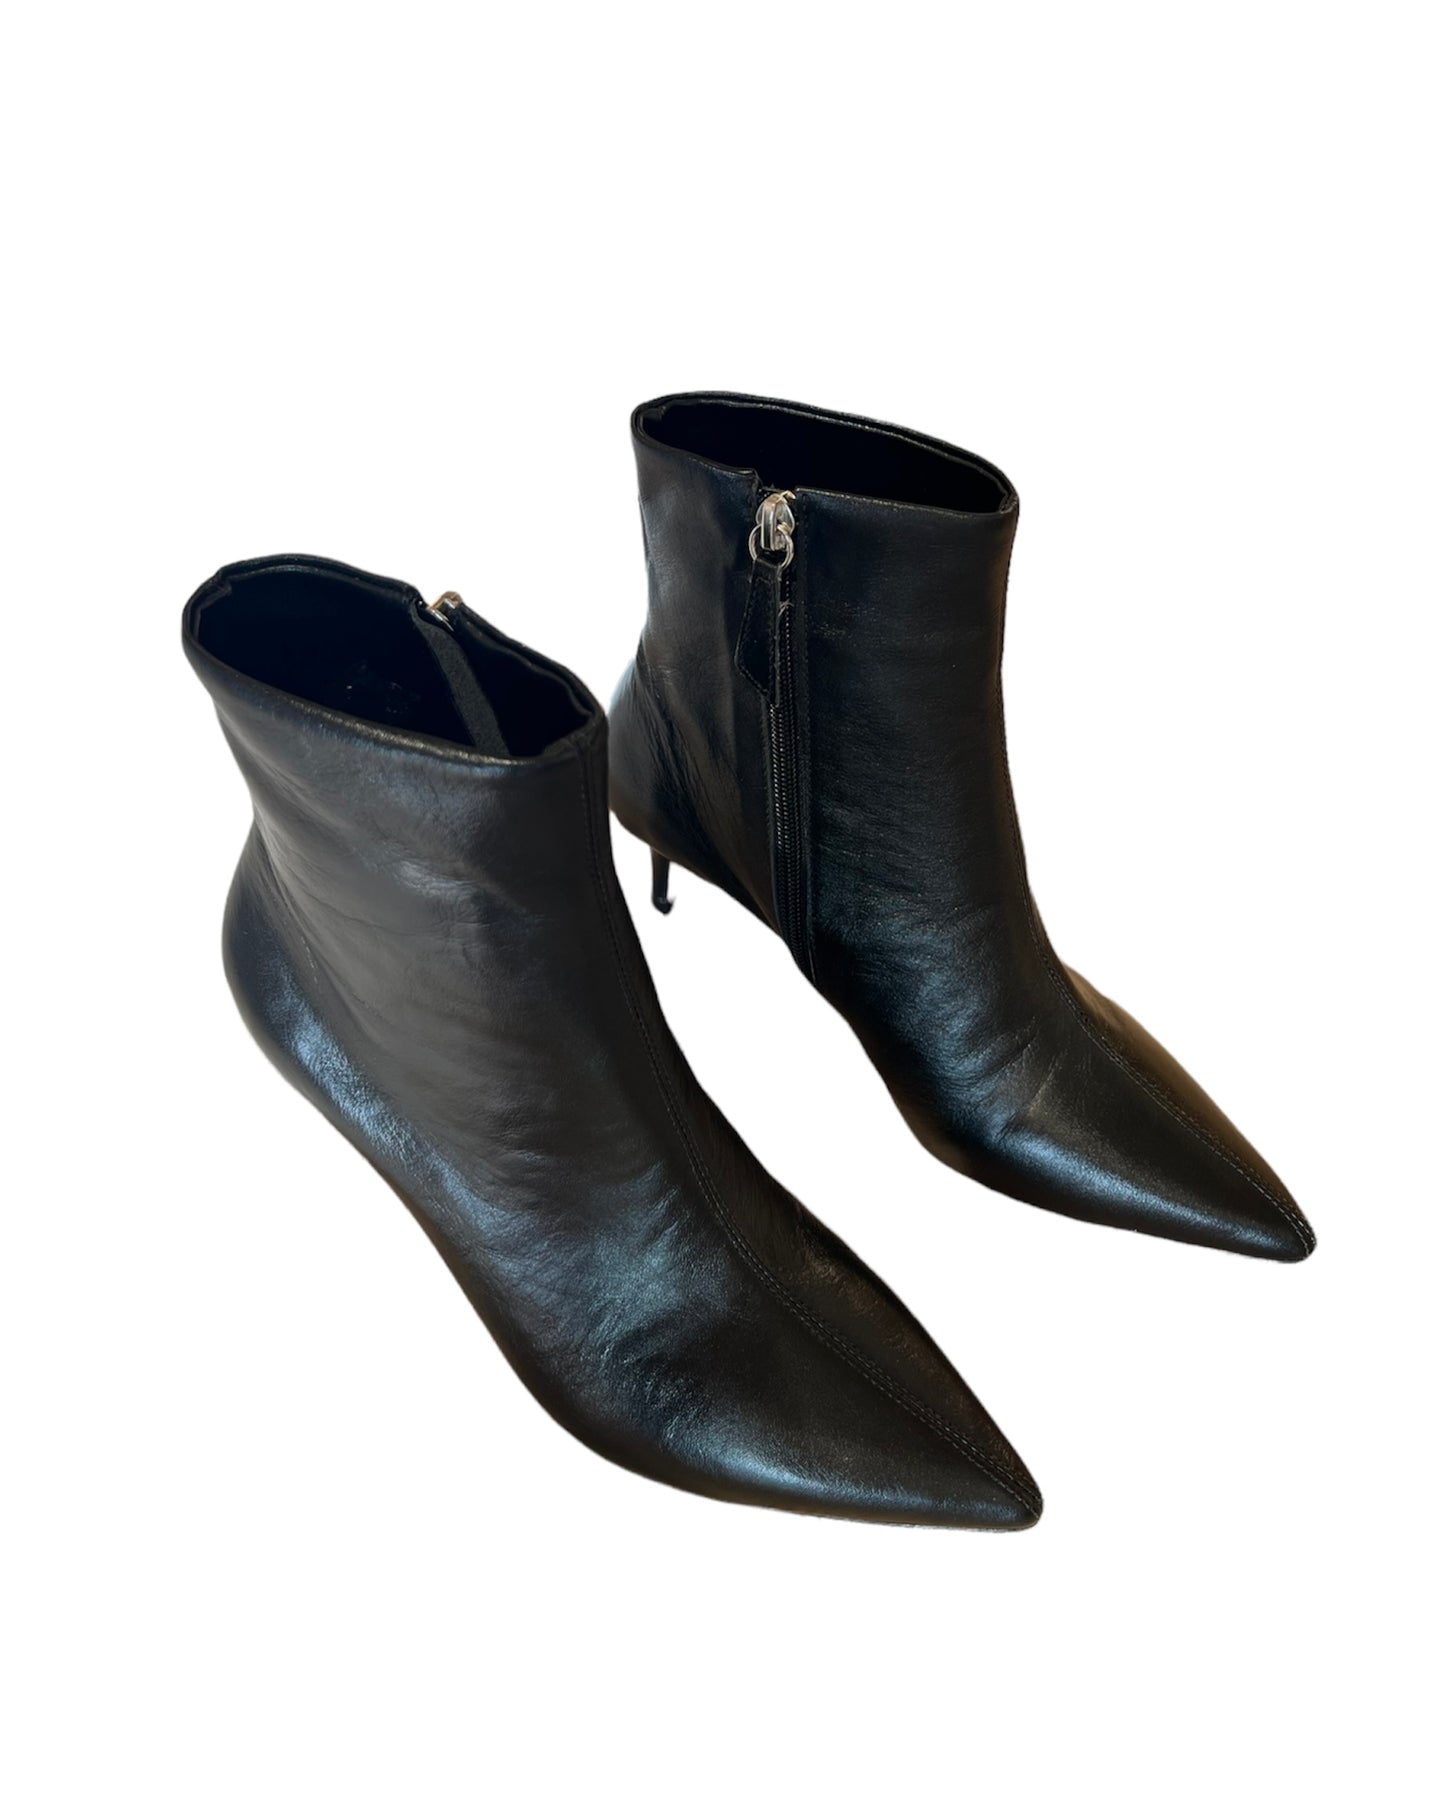 Ankle boots vitello nero -49642NE